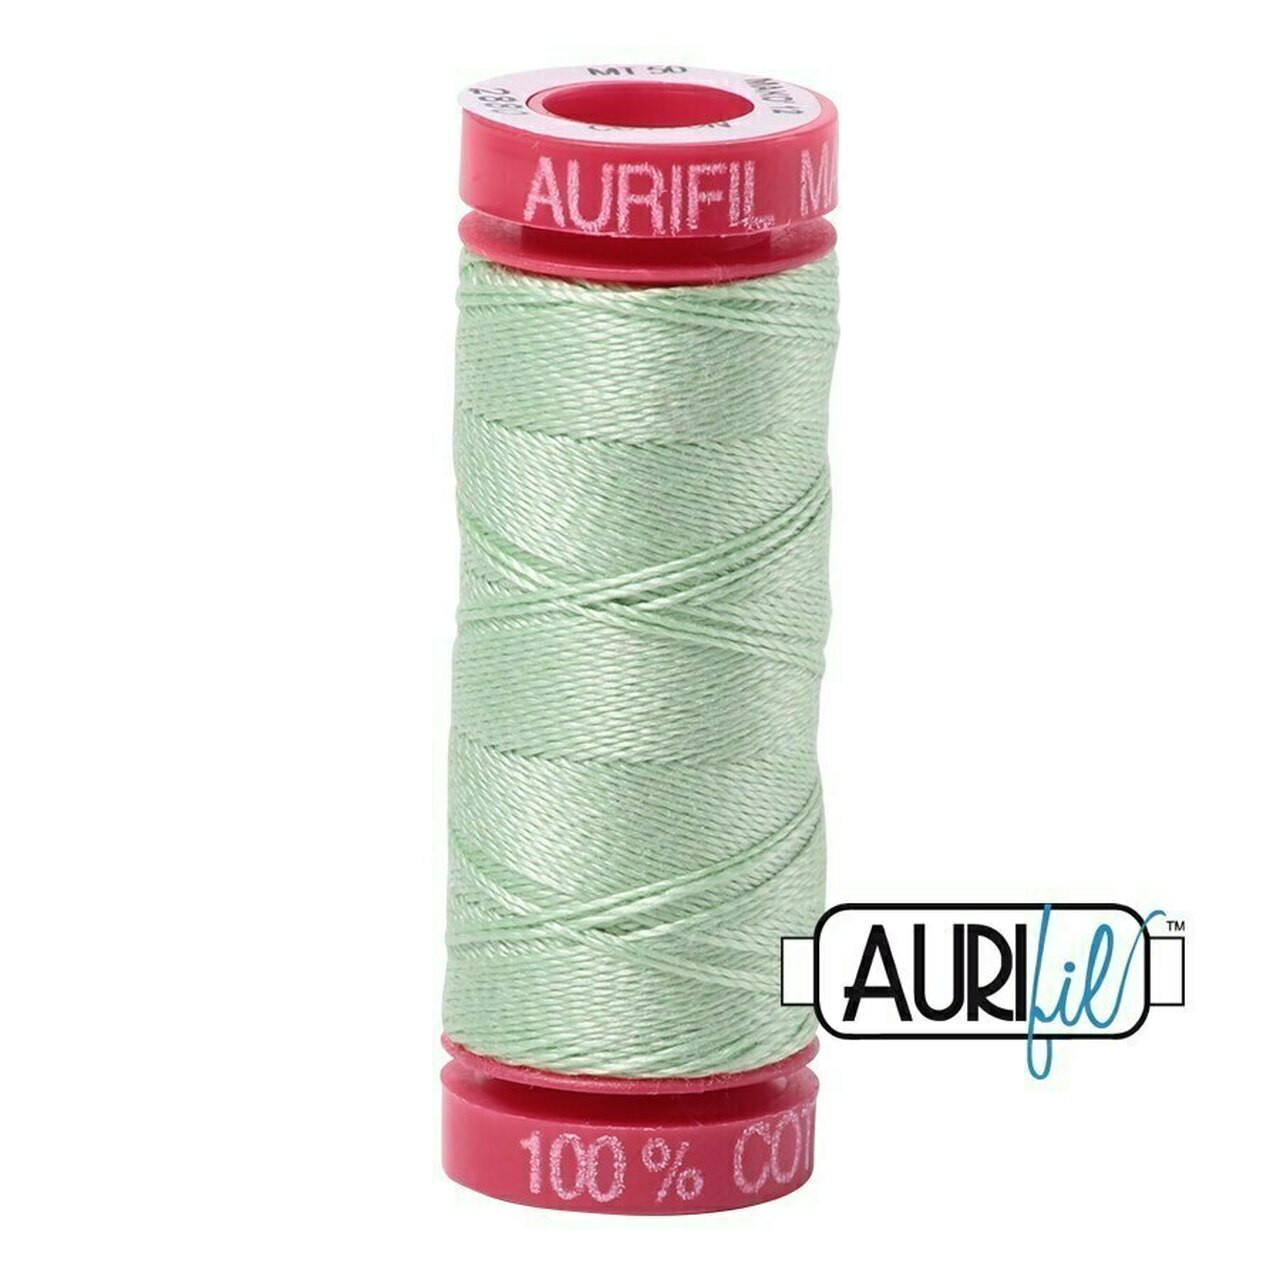 Aurifil 2880 - Pale Green